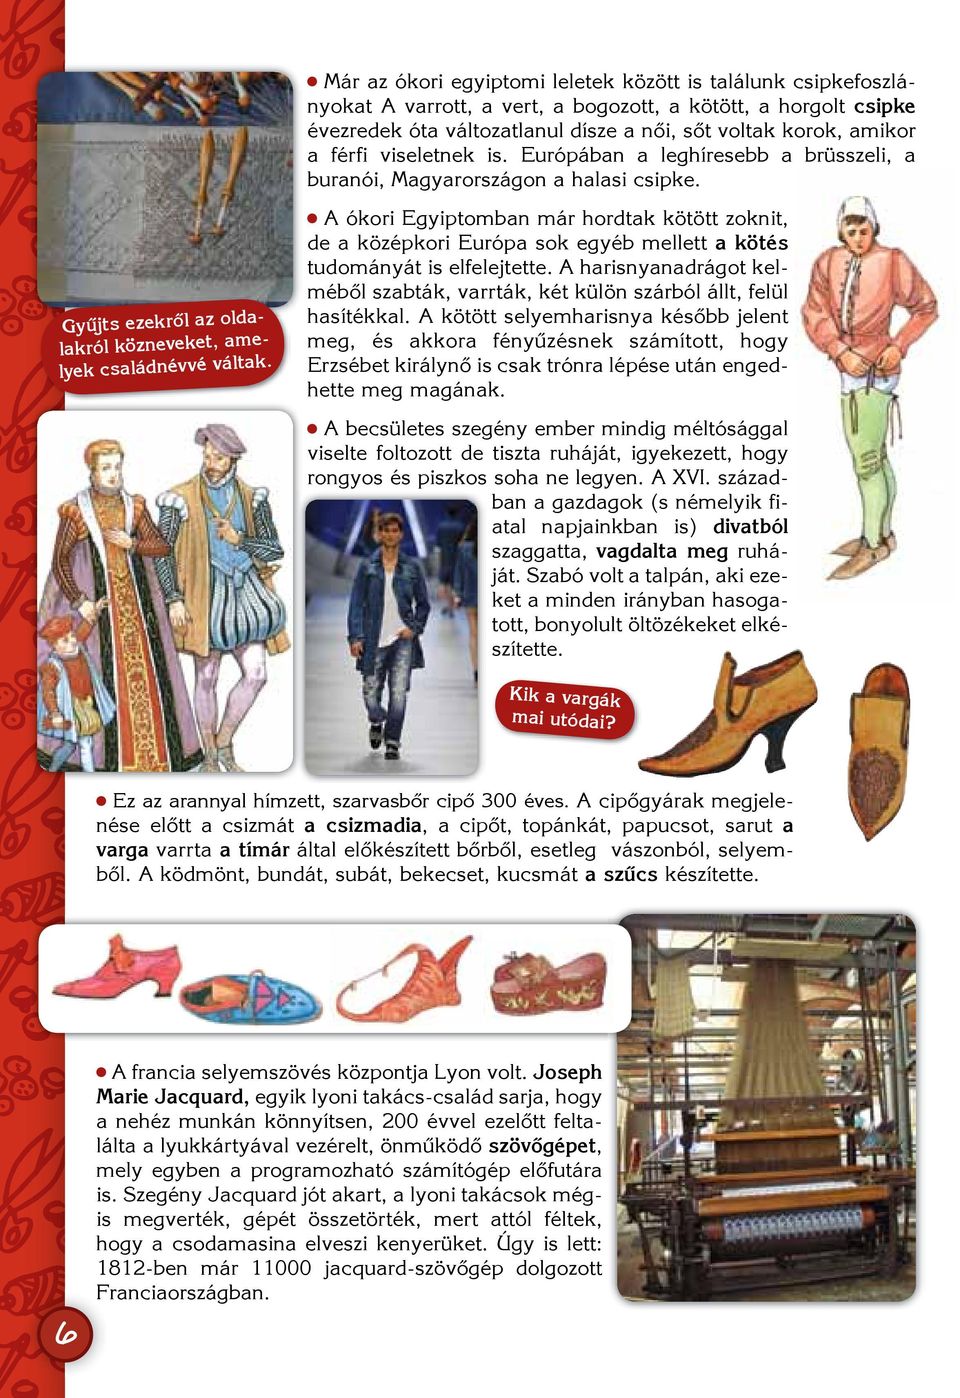 A ókori Egyiptomban már hordtak kötött zoknit, de a középkori Európa sok egyéb mellett a kötés tudományát is elfelejtette.